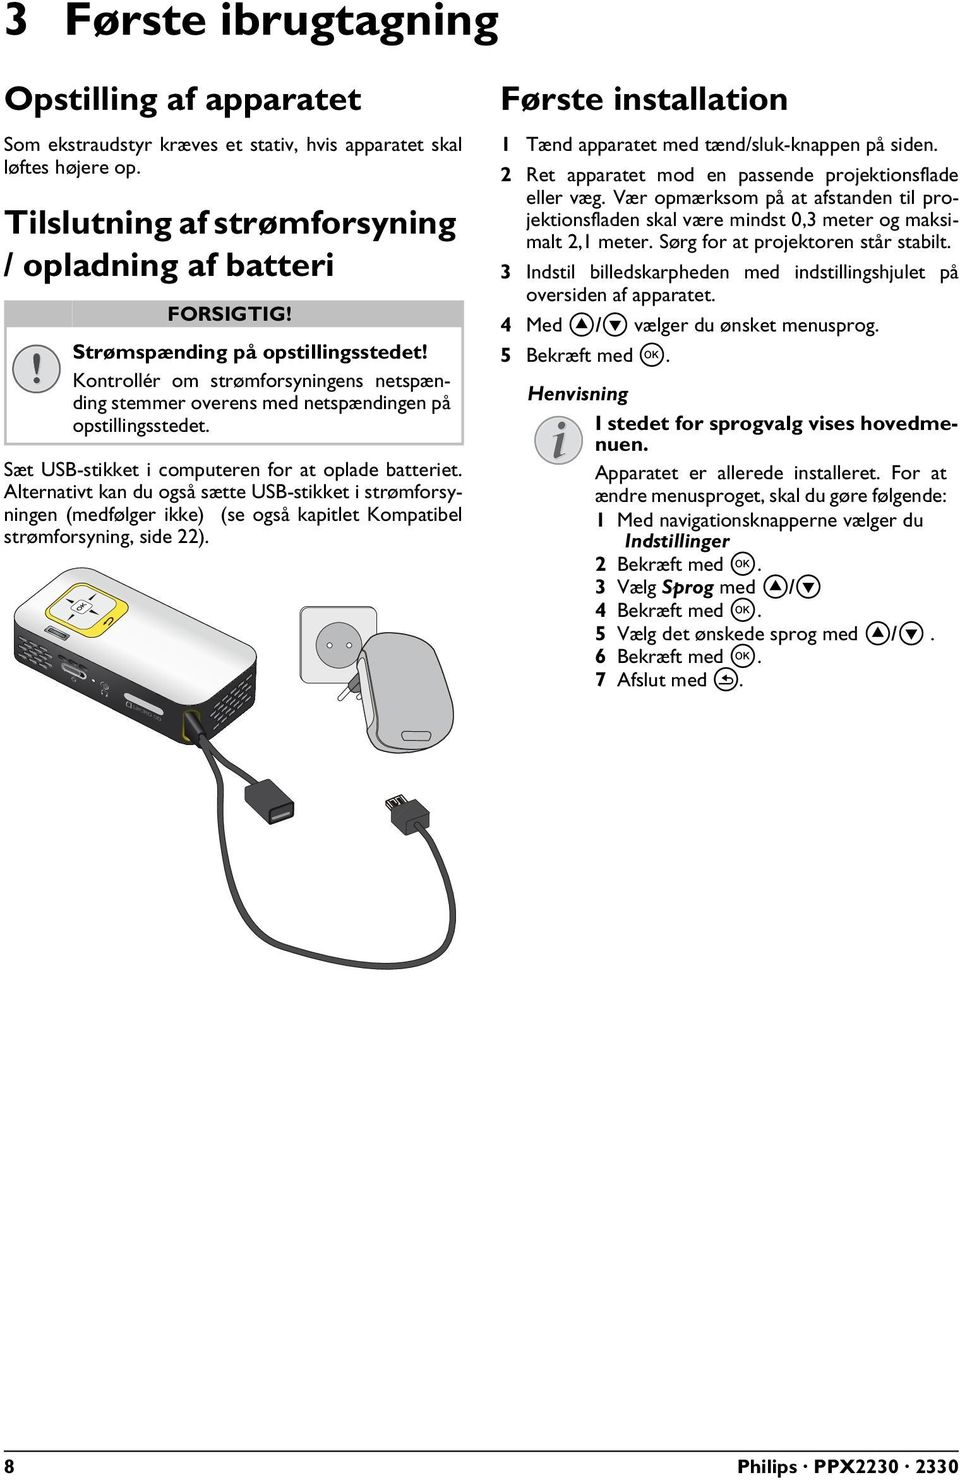 Alternativt kan du også sætte USB-stikket i strømforsyningen (medfølger ikke) (se også kapitlet Kompatibel strømforsyning, side 22).